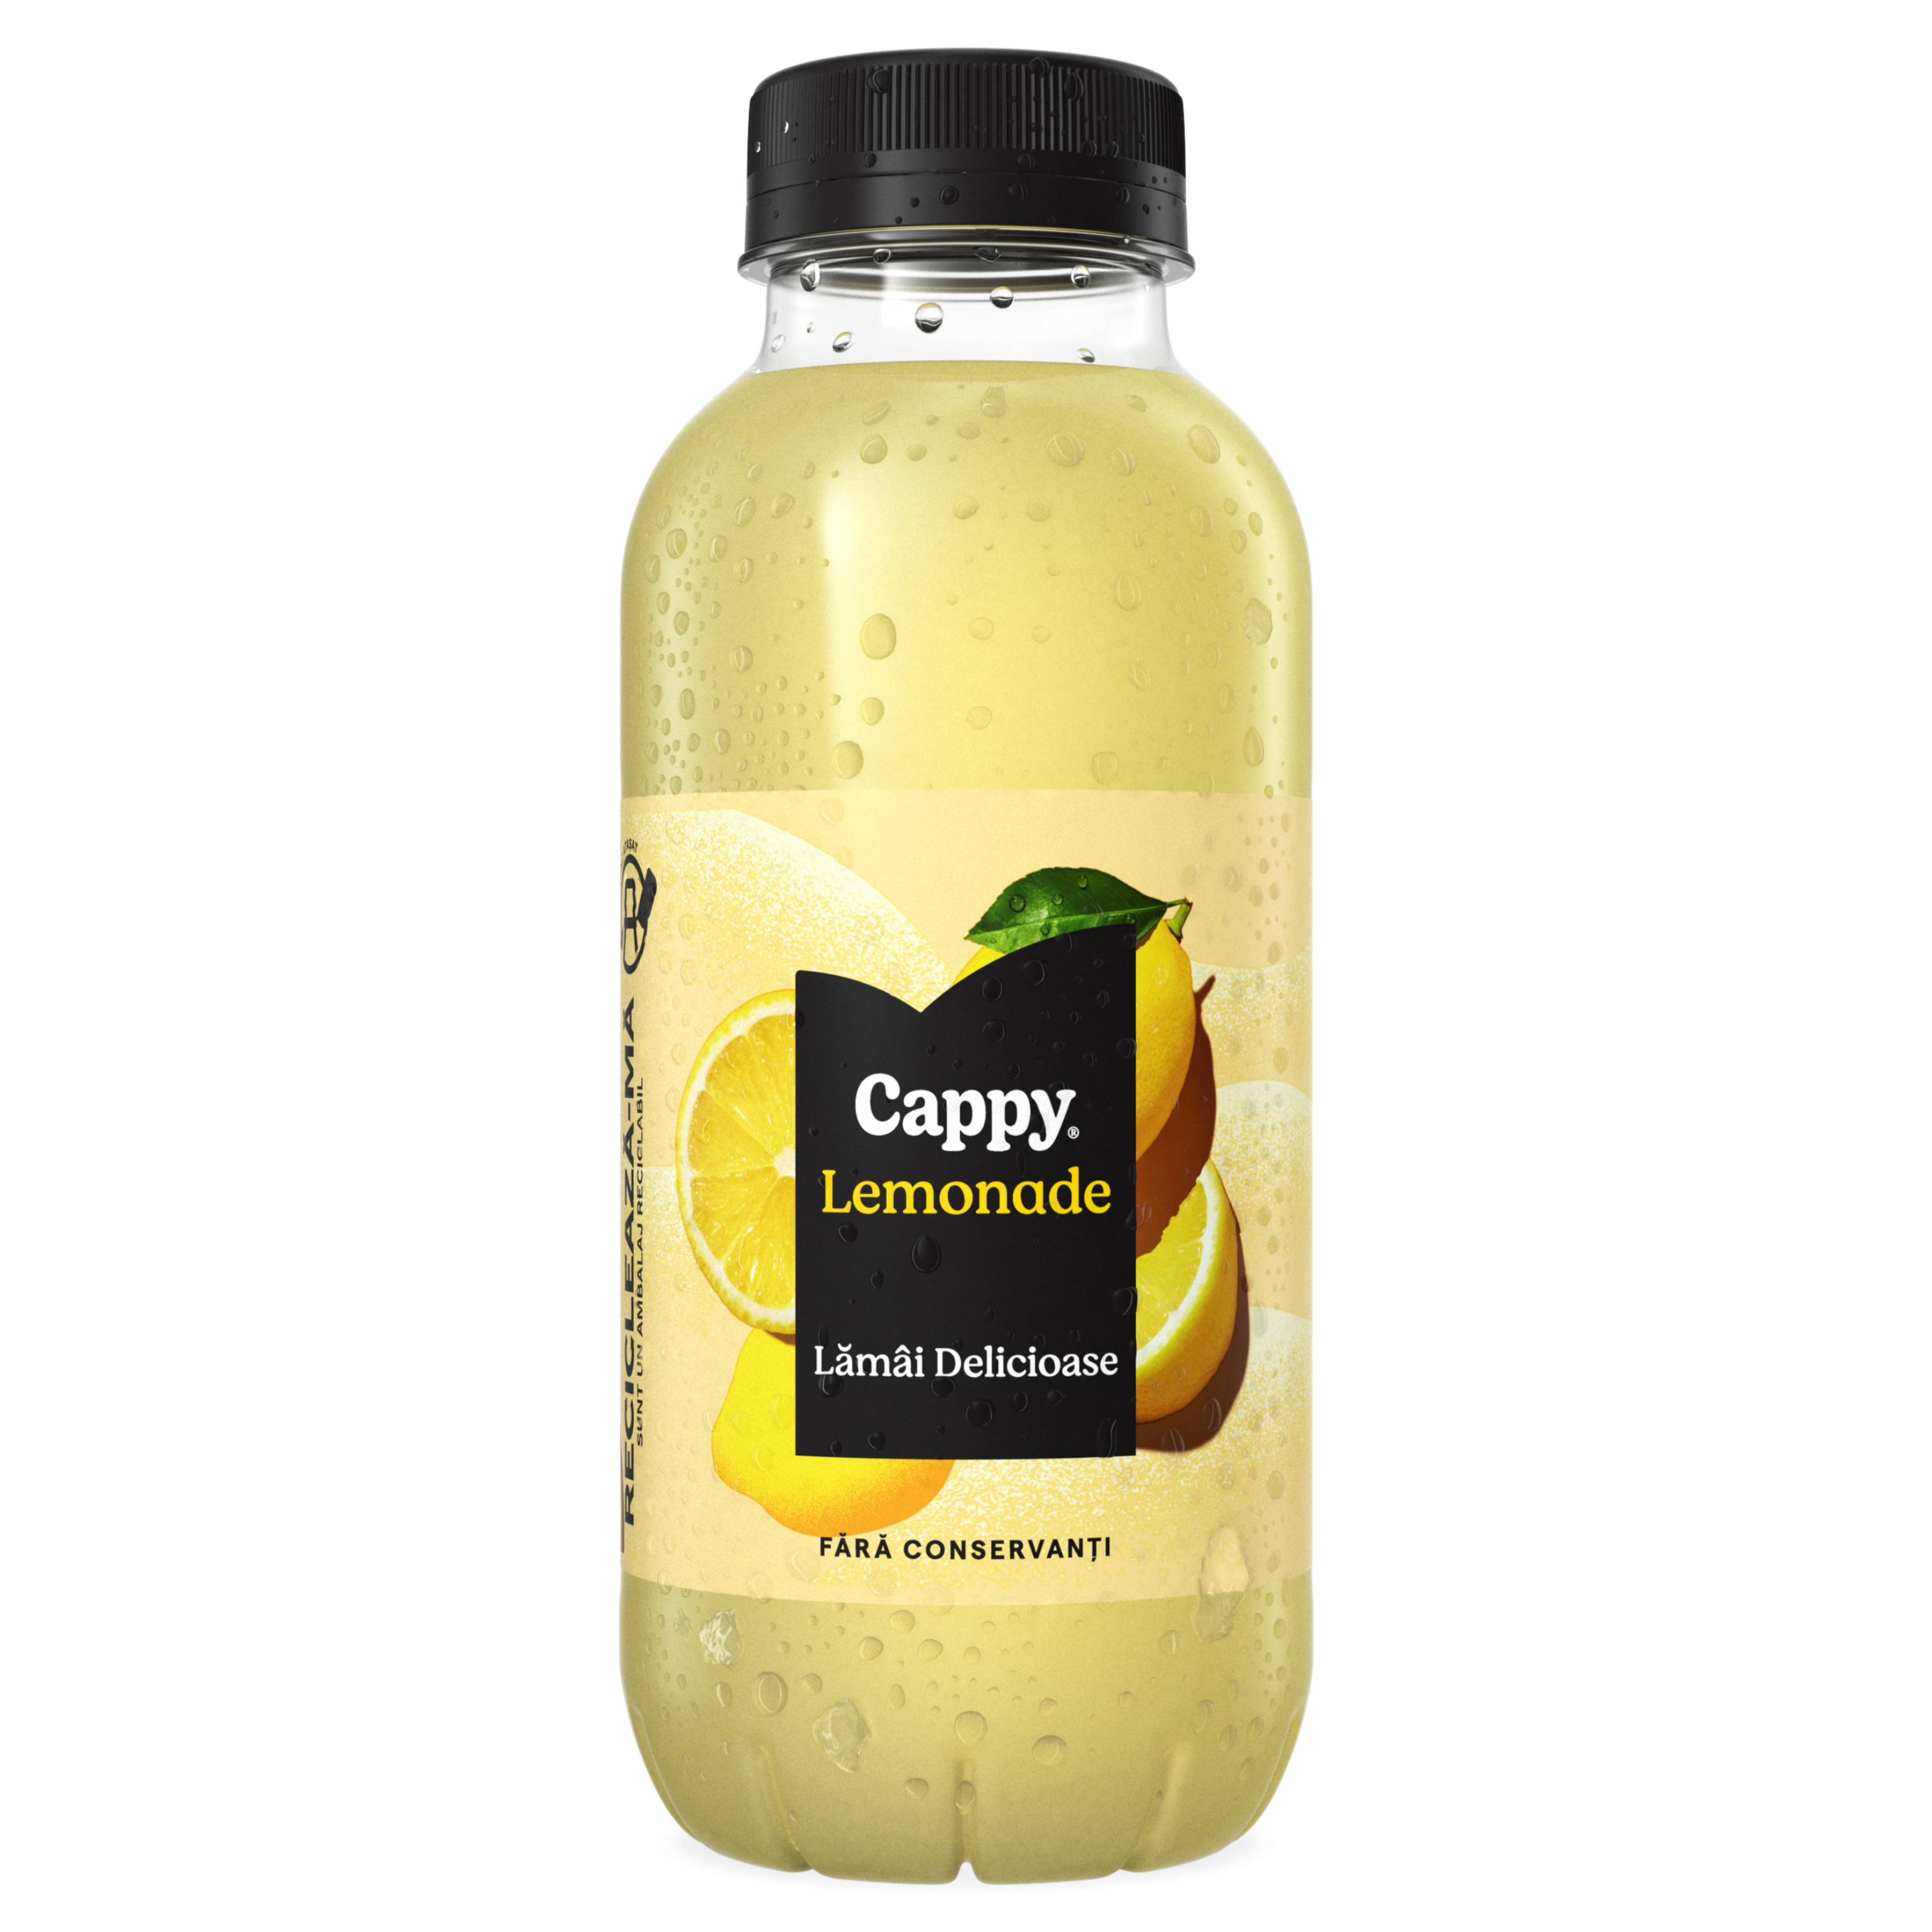 Sticlă de Cappy Lemonade Lămâi Delicioase